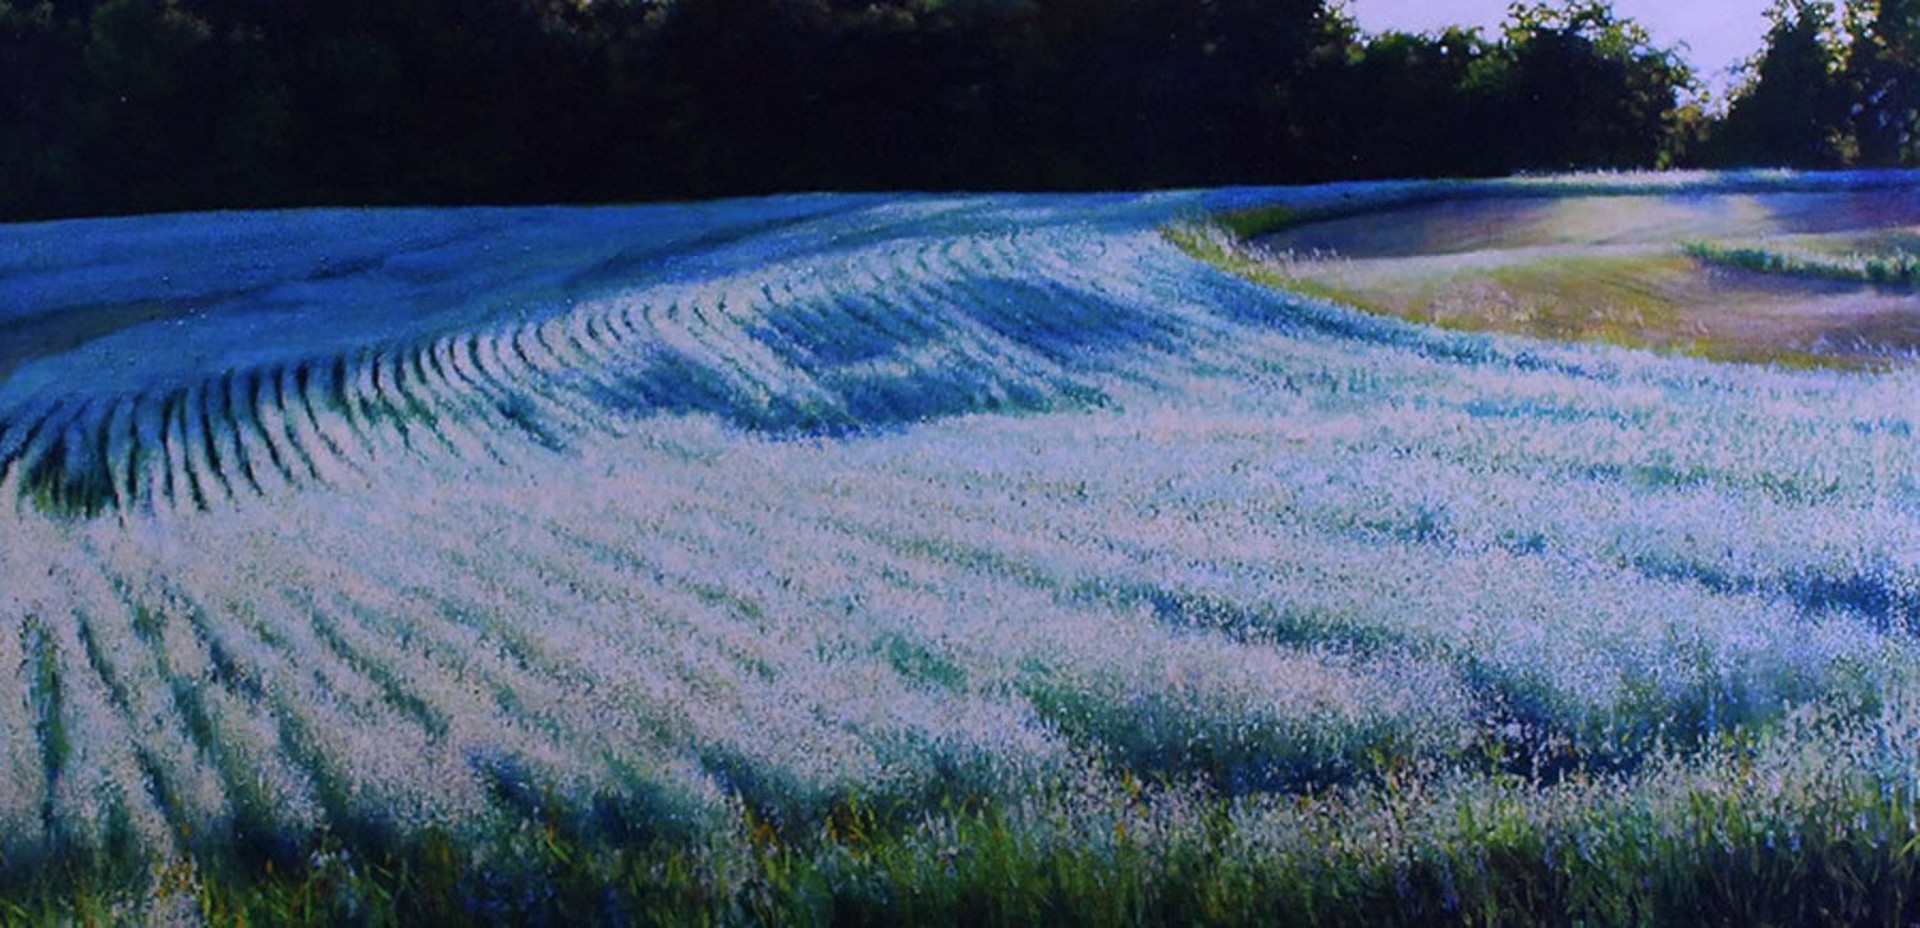 Barley Field by Deborah Ebbers